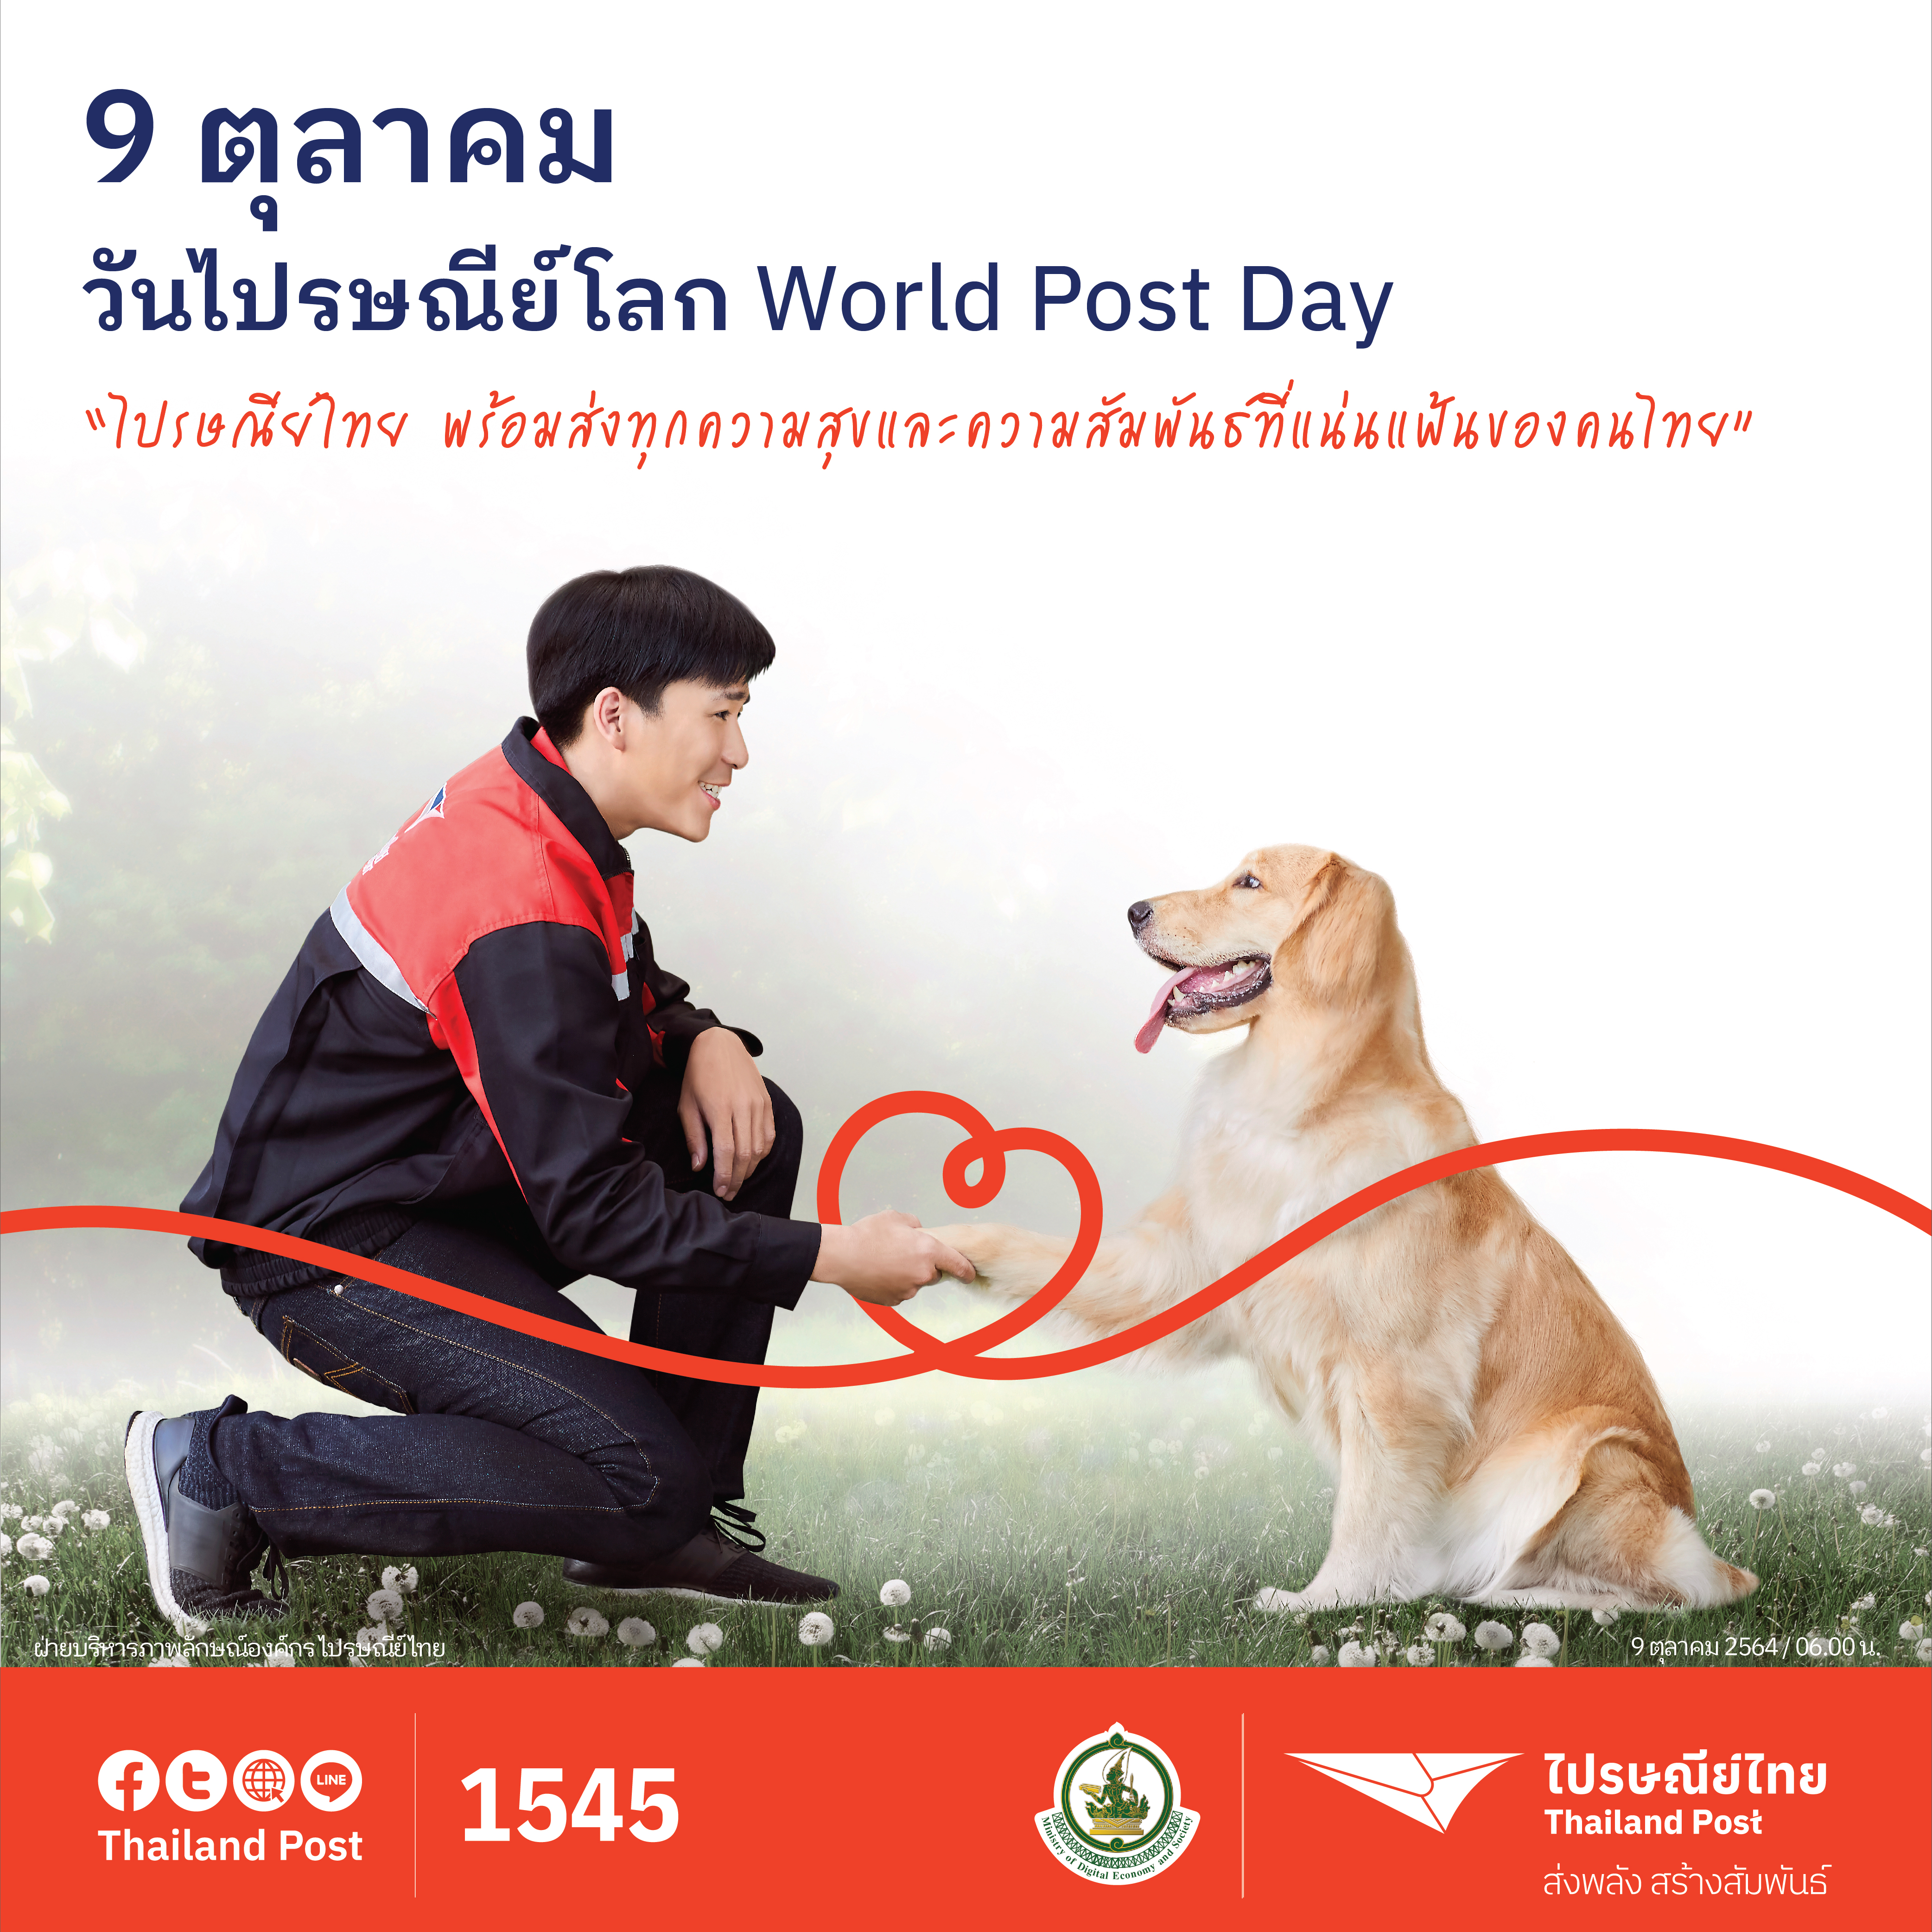 ไปรษณีย์ไทย เชิญชวนร่วมฉลองวันไปรษณีย์โลก 2564 พร้อมลุ้นรางวัลสุดพิเศษ 